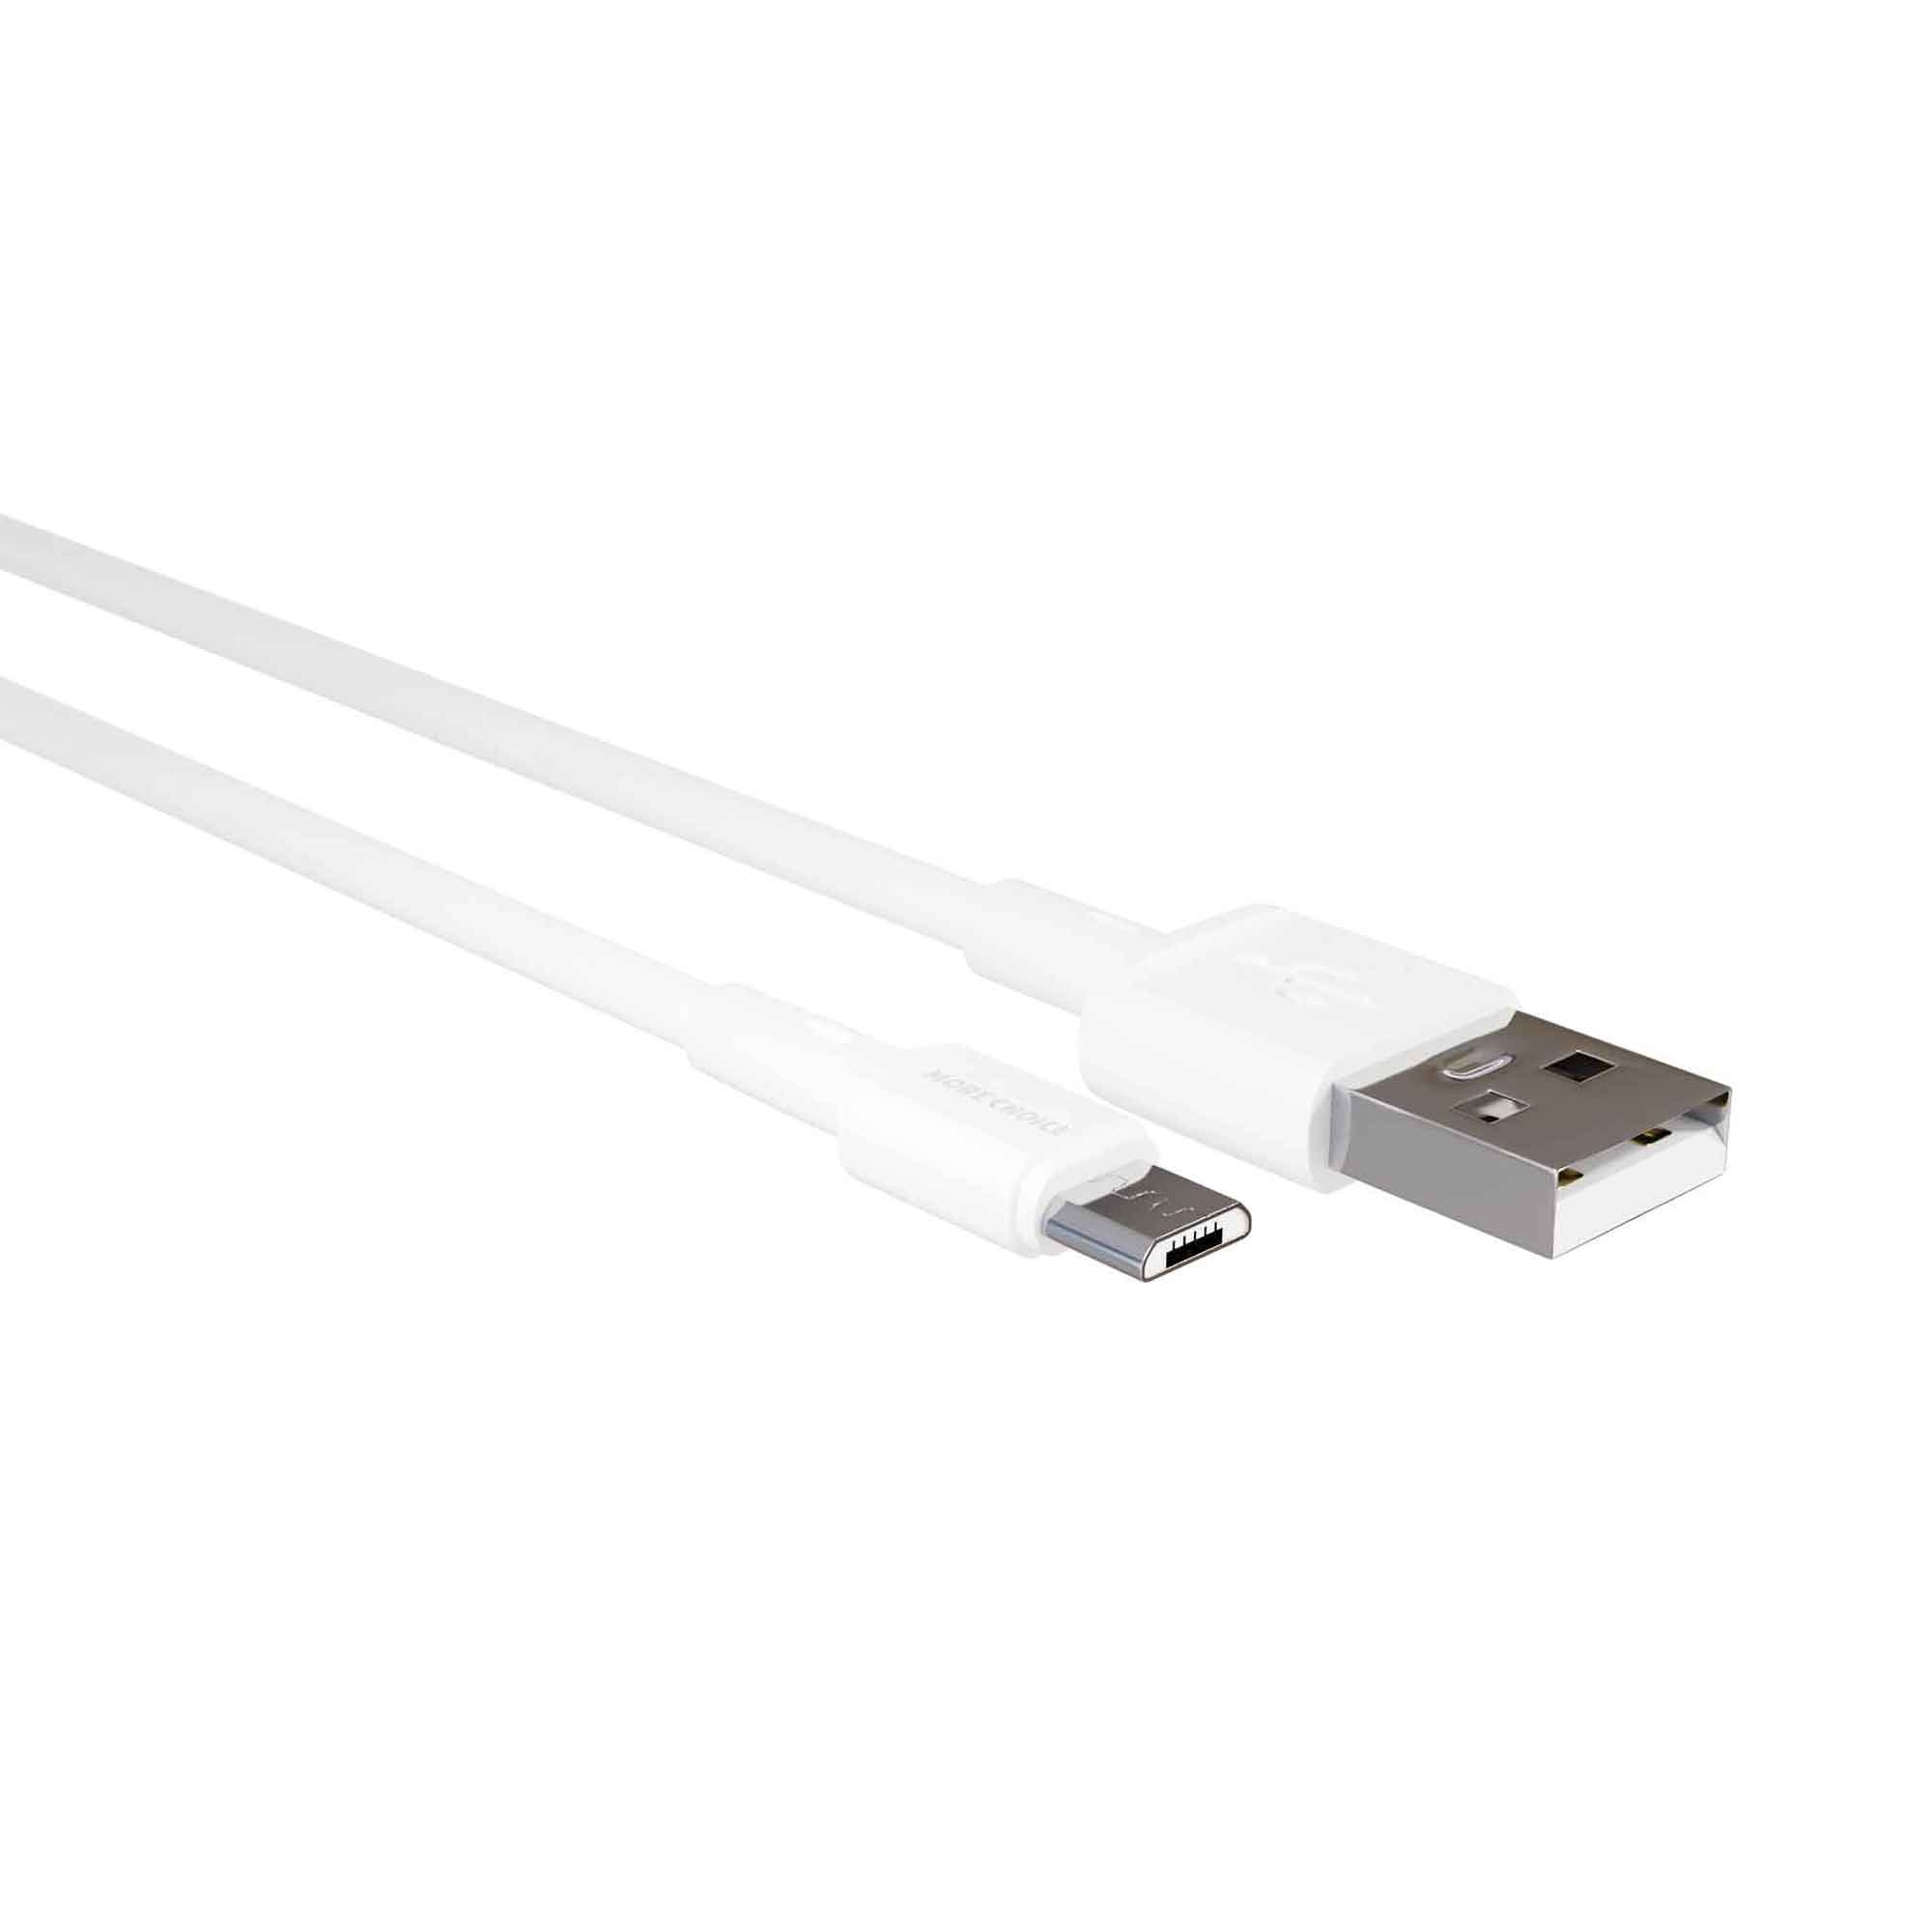 Дата-кабель More choice K14m 2A micro USB White USB дата кабель more choice usb 2 0a для micro usb k26m tpe 1м white